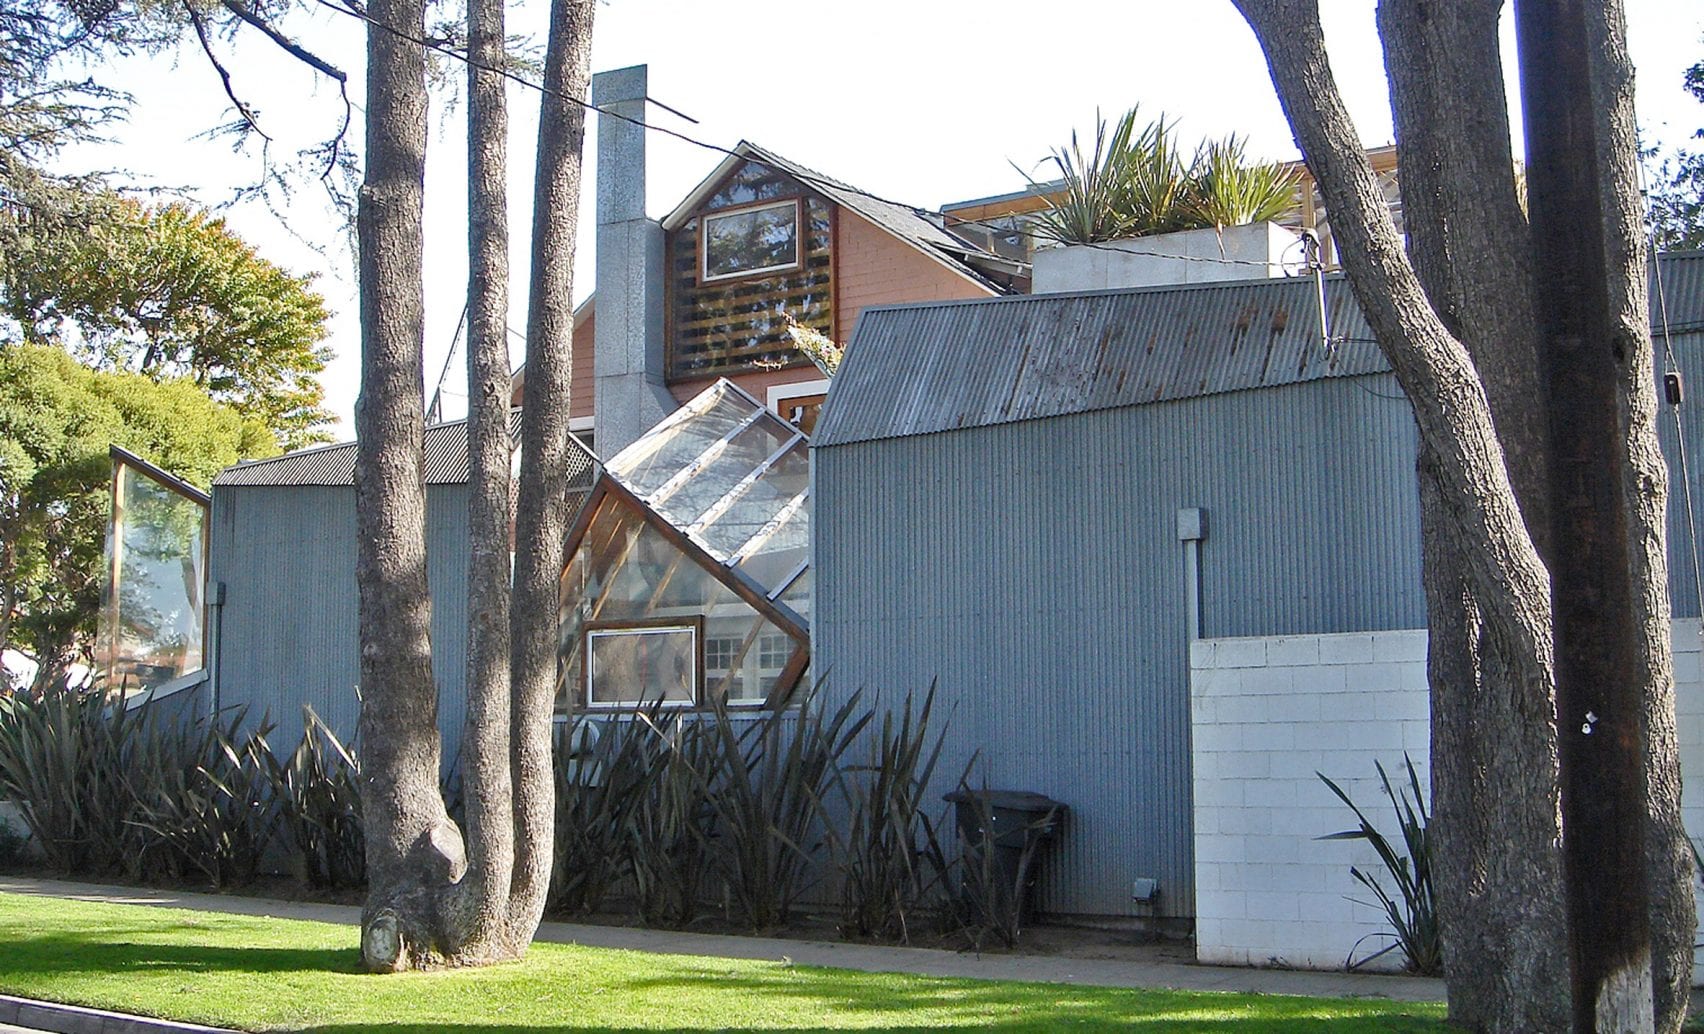 Το σπίτι του αρχιτέκτονα Frank Gehry που εξαγρίωσε τους γείτονες και τον έκανε διάσημο